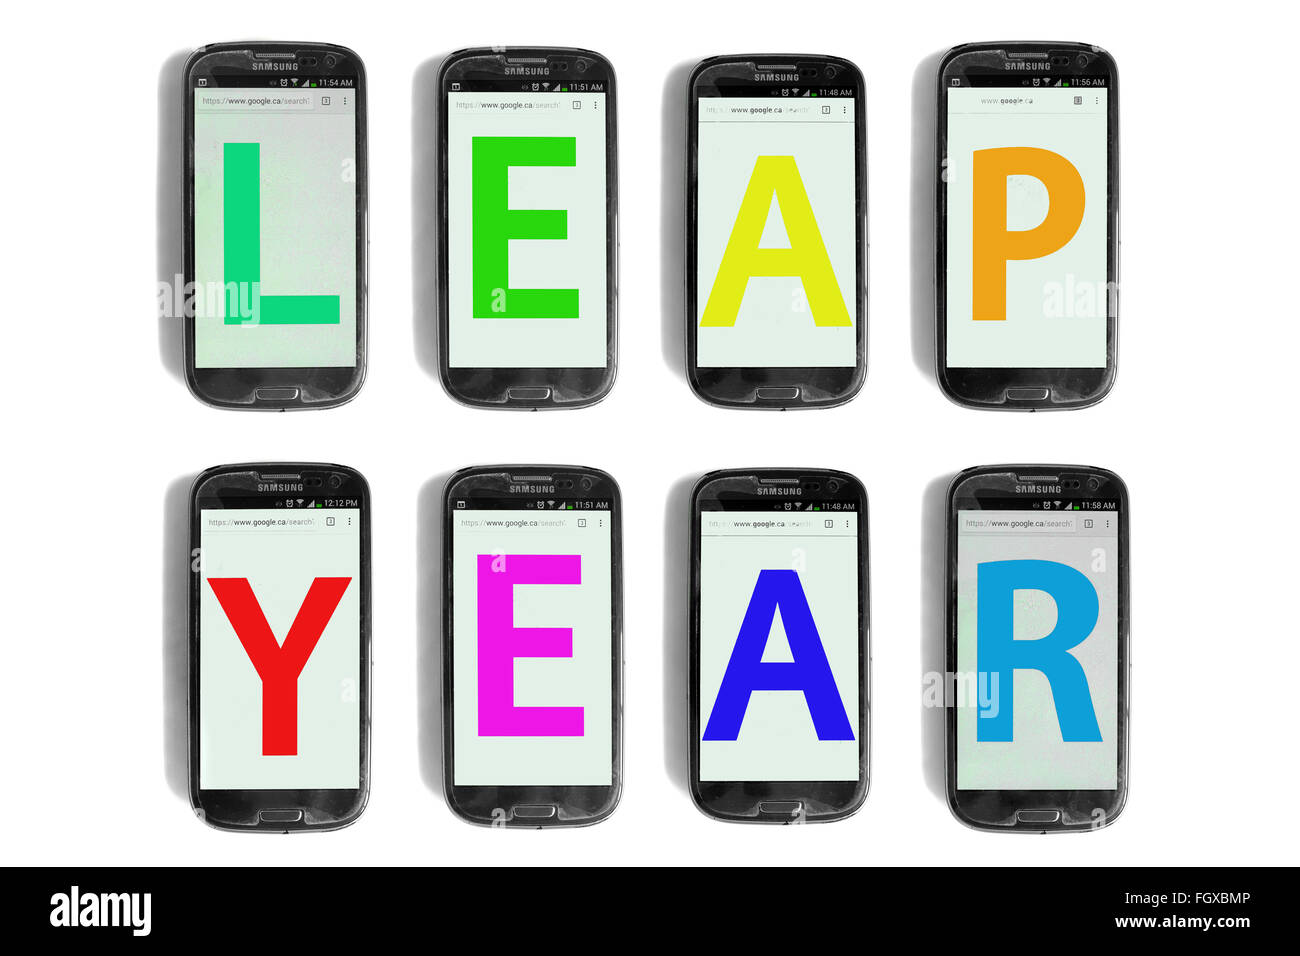 Anno bisestile scritto su schermi di smartphone fotografati contro uno sfondo bianco. Foto Stock